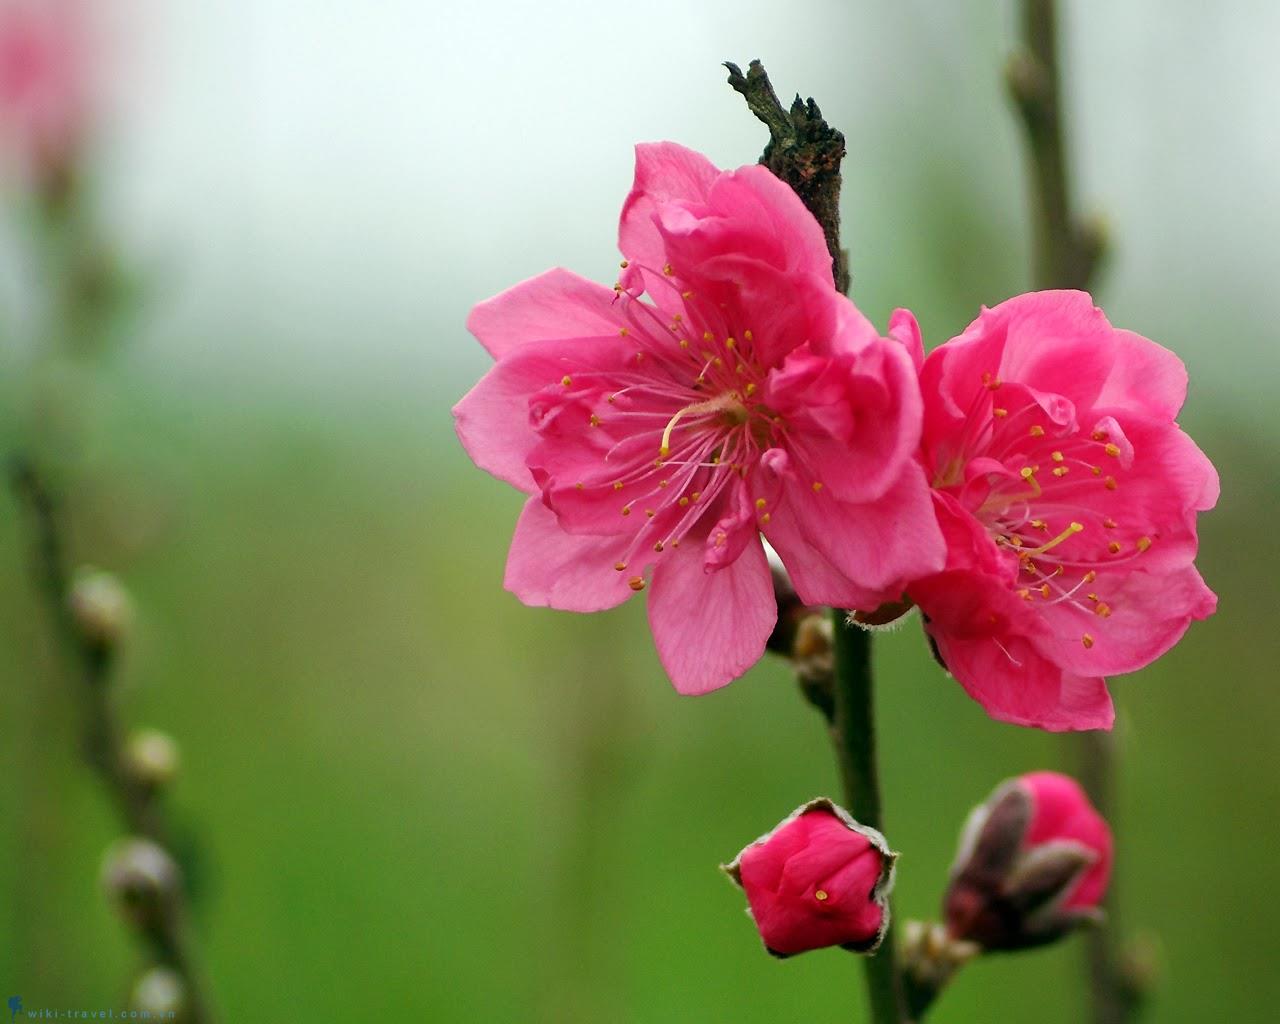 Hoa chưng tết mang đậm nét văn hóa ngày xuân | VIETRAVEL